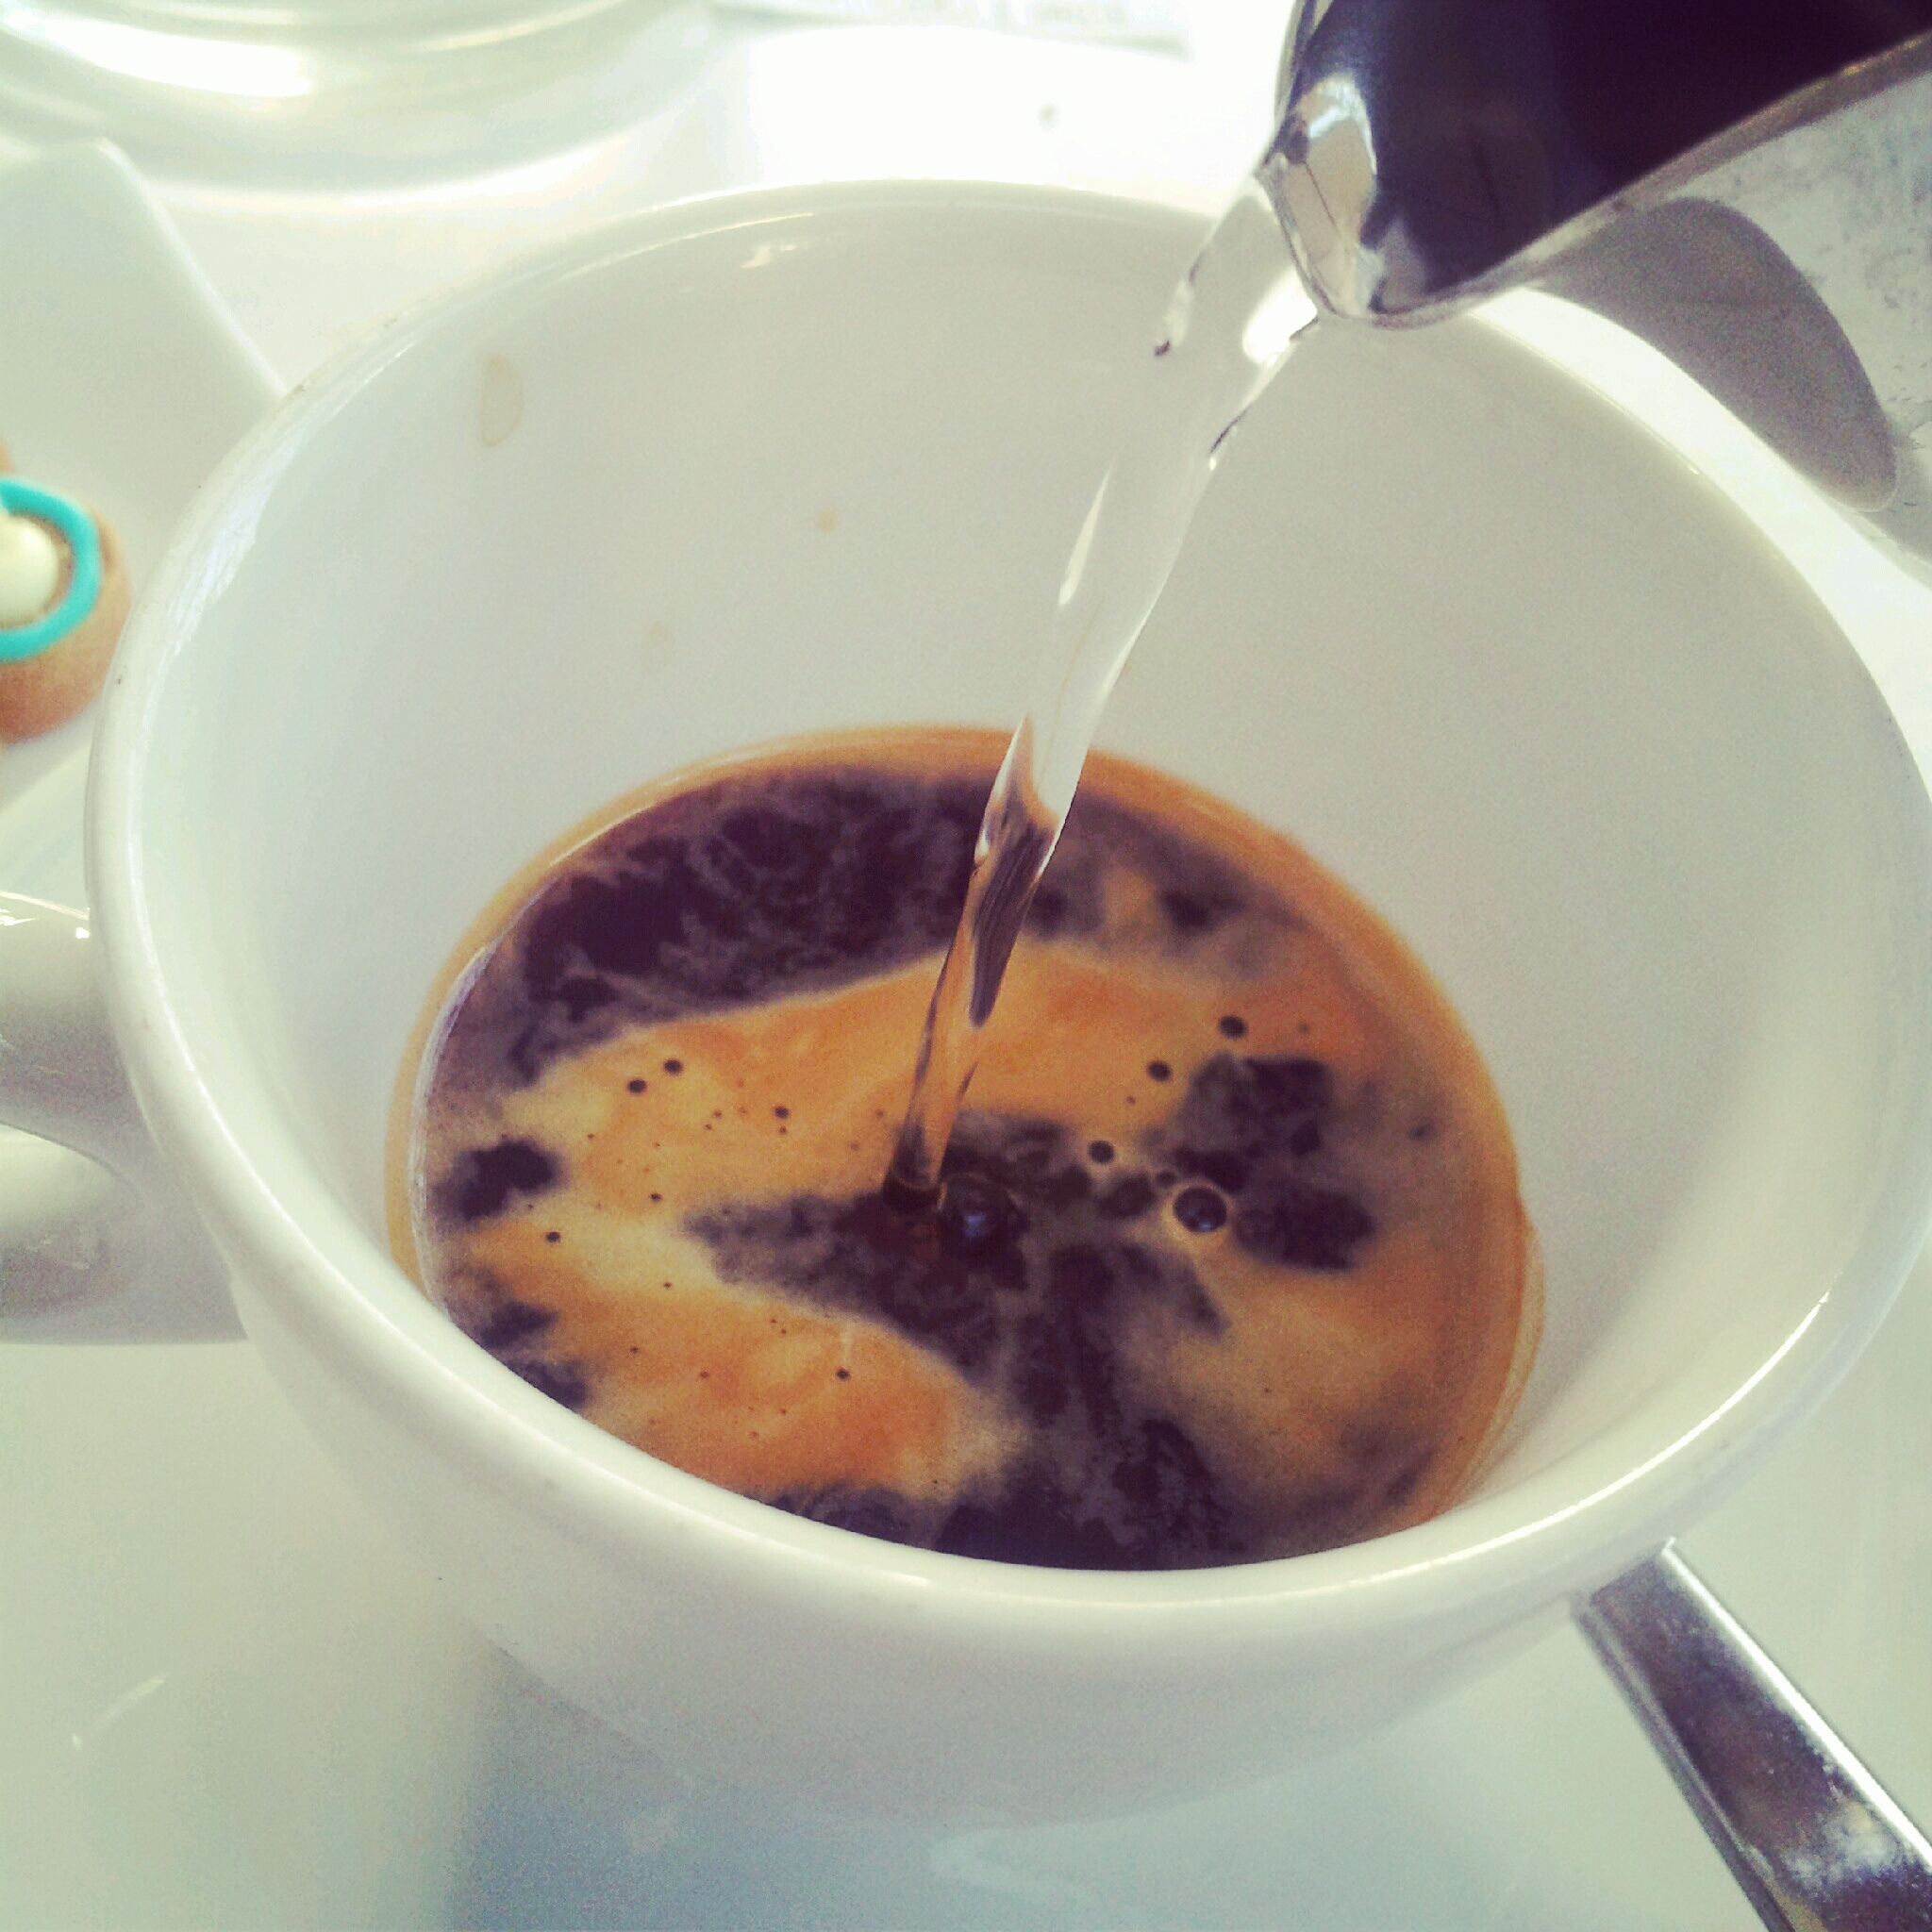 Crna kava